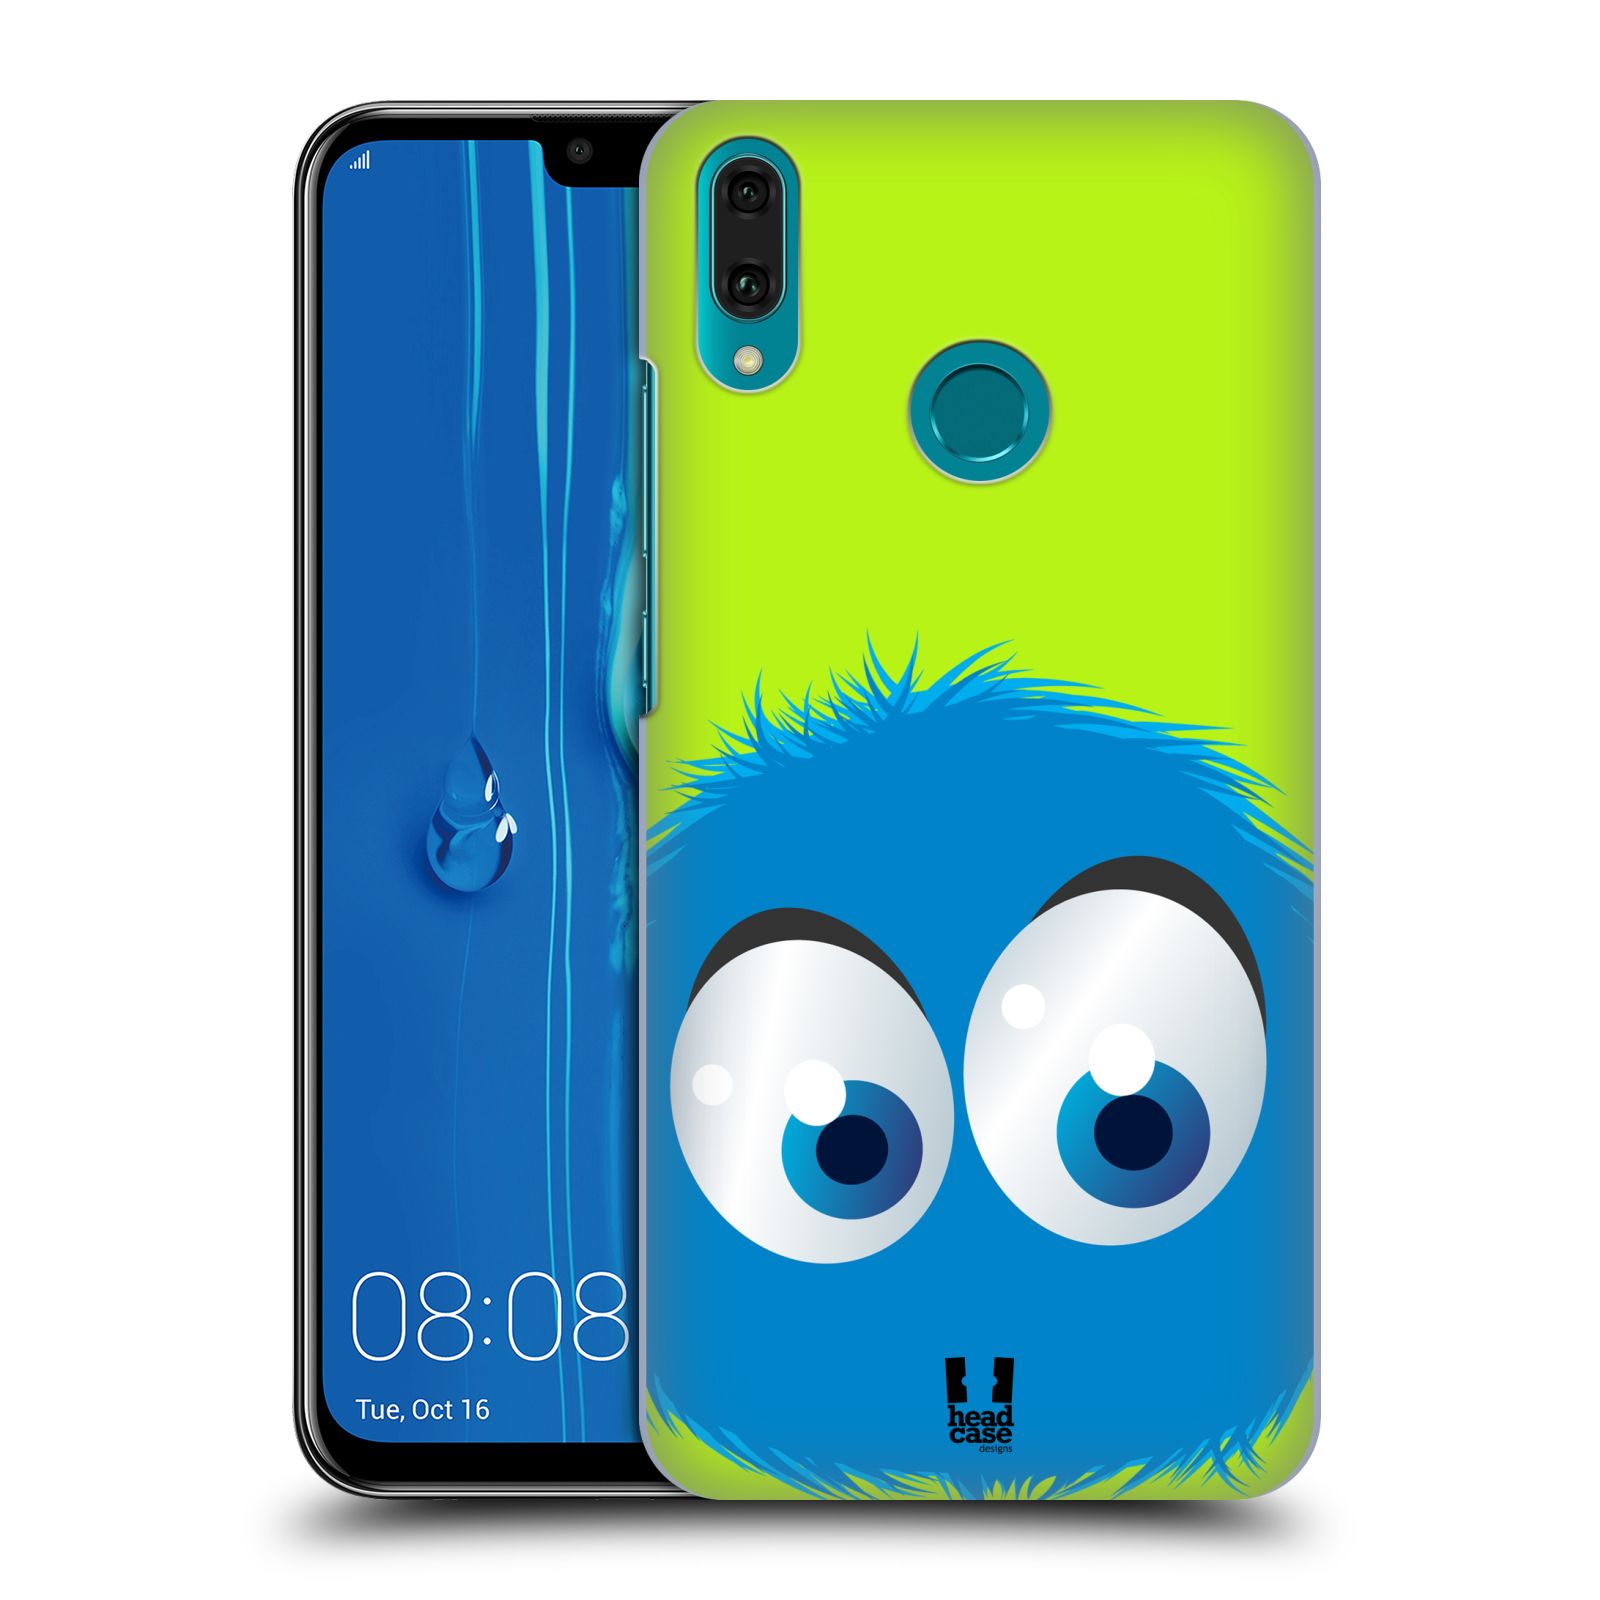 Pouzdro na mobil Huawei Y9 2019 - HEAD CASE - vzor Barevný chlupatý smajlík MODRÁ zelené pozadí